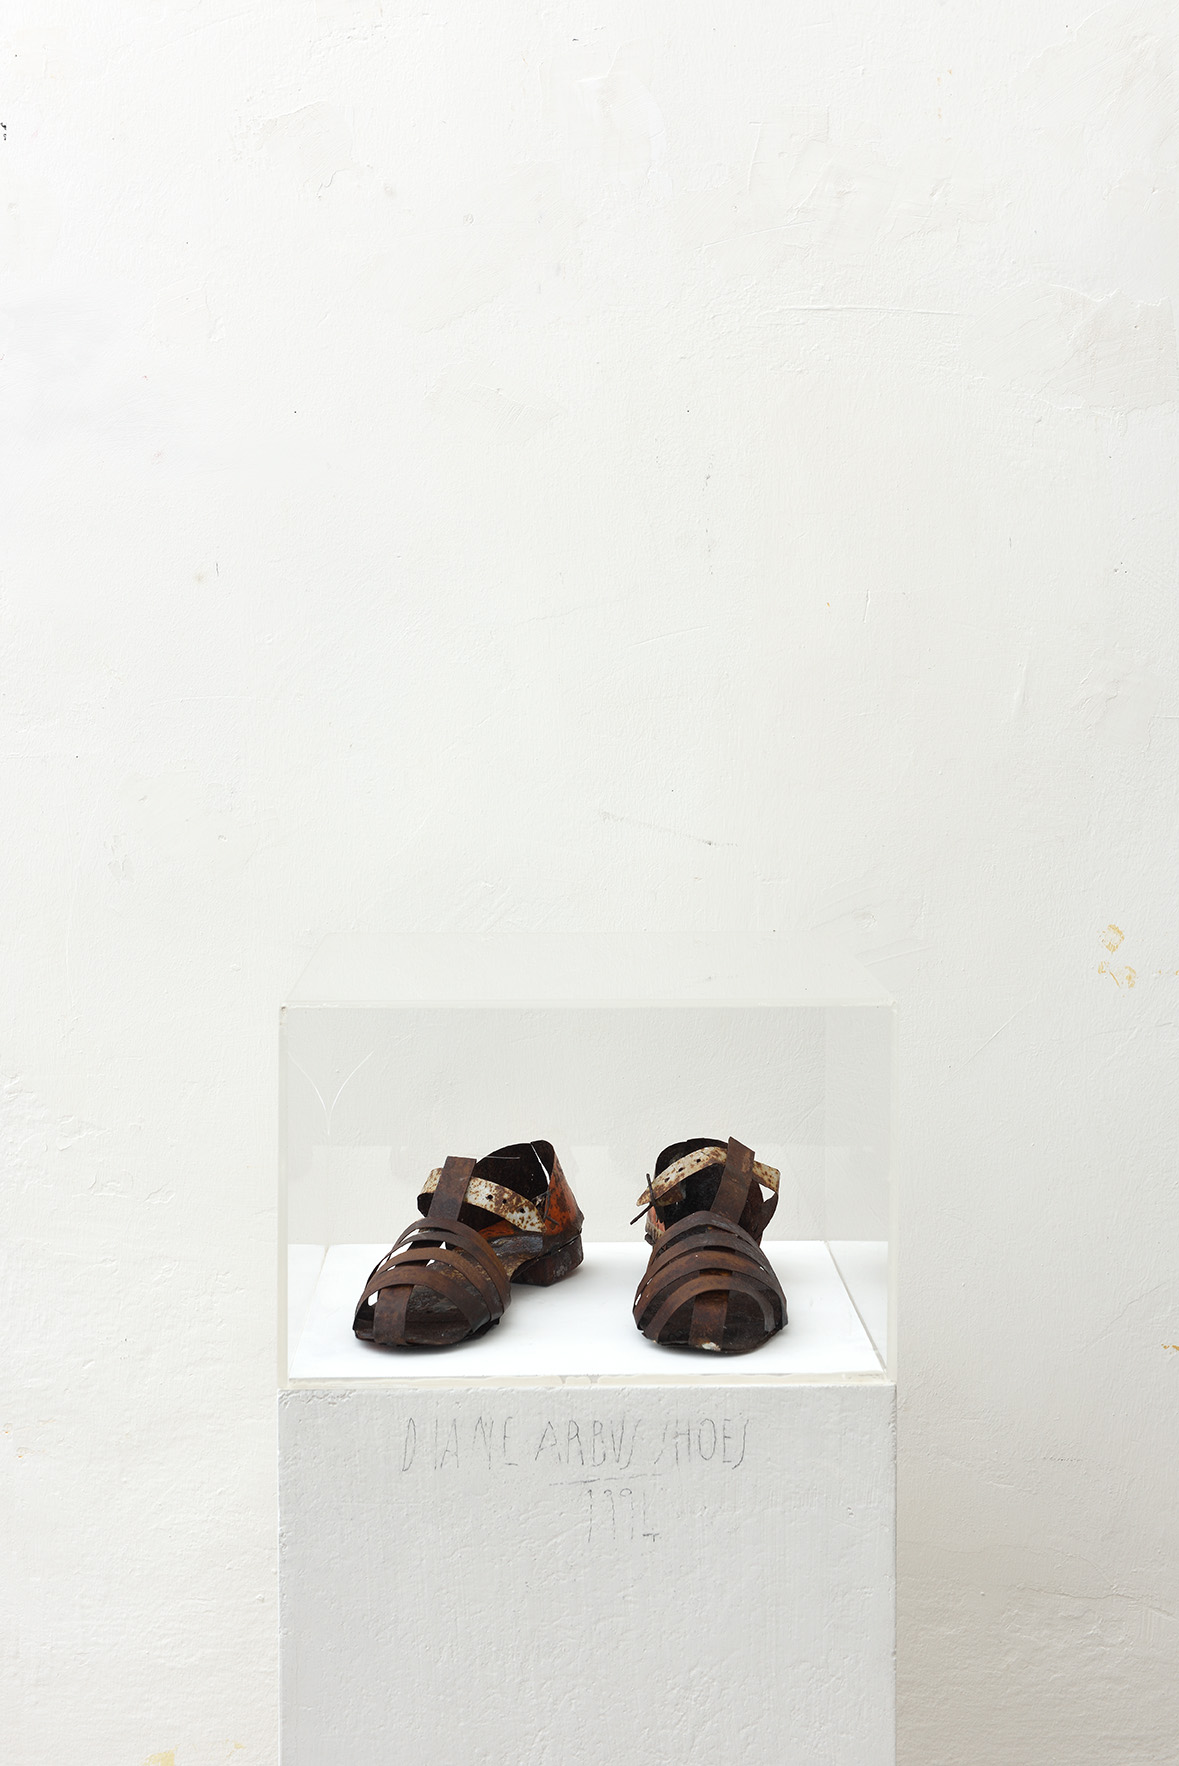 Graziano Spinosi, Arbus-Shoes, 1994, foto di Michele Alberto Sereni